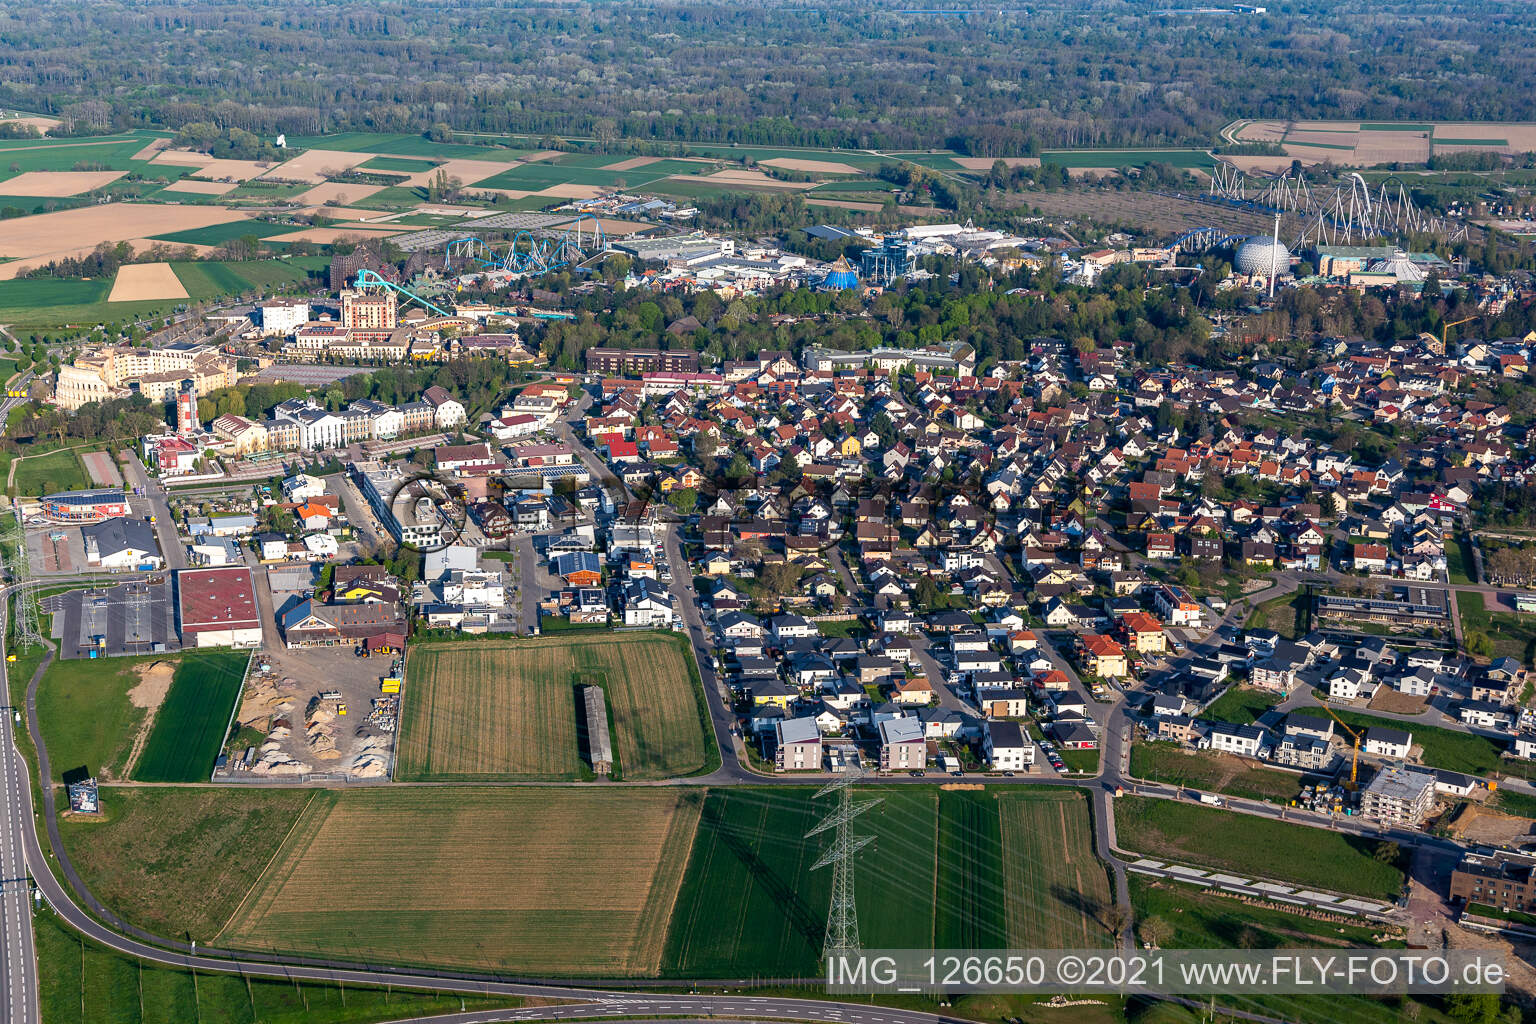 Vue aérienne de Le parc d'attractions Europa-Park fermé en raison du confinement dû au coronavirus à Rust dans le département Bade-Wurtemberg, Allemagne